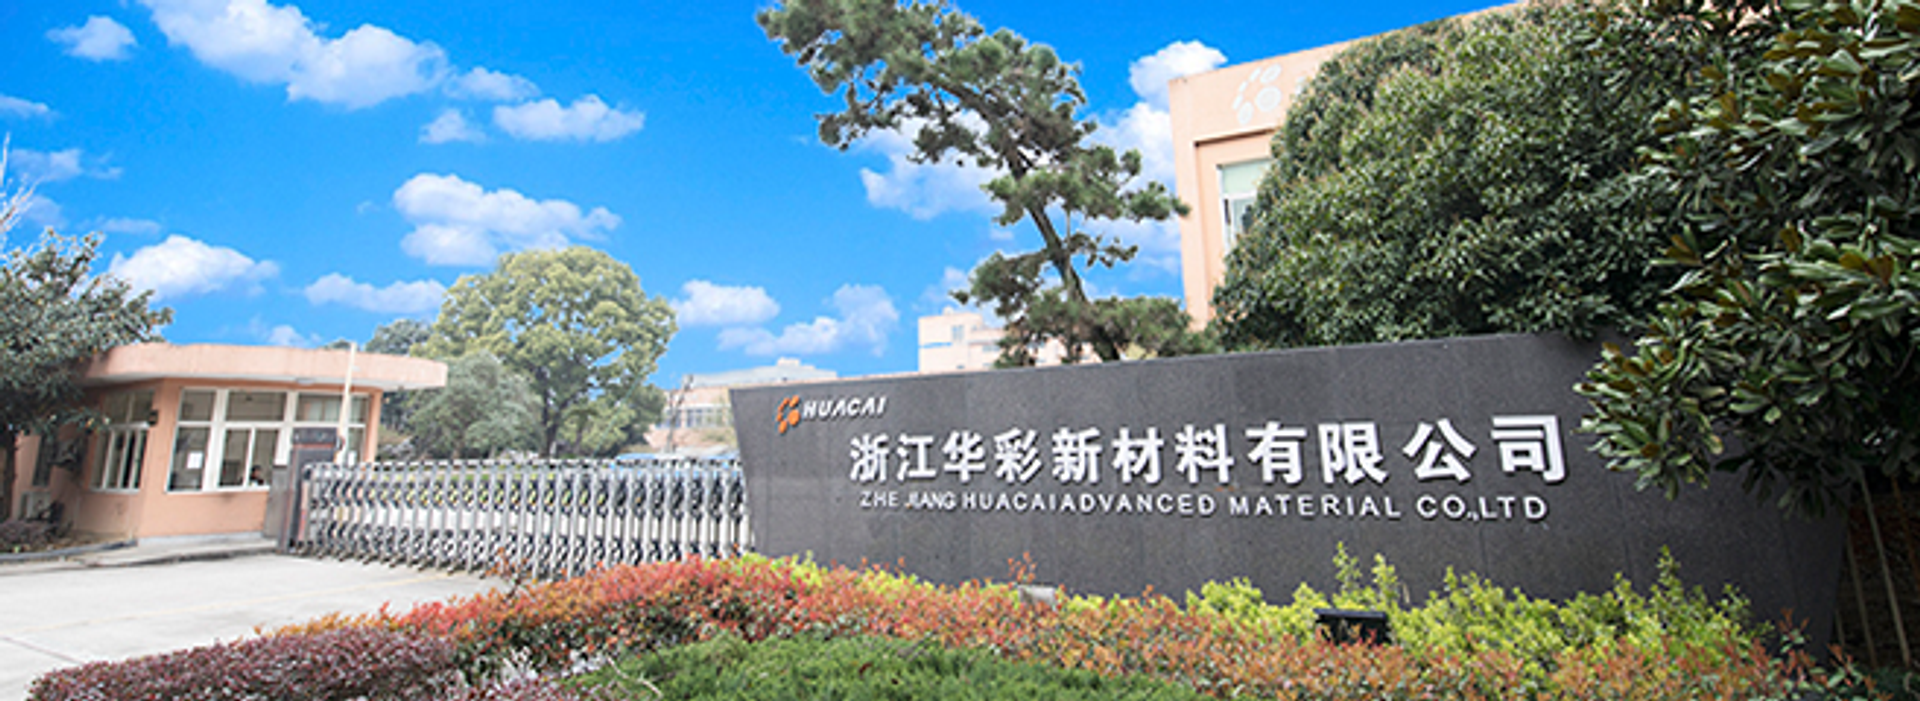 Zhejiang Huacai Advanced Material Co., Ltd.